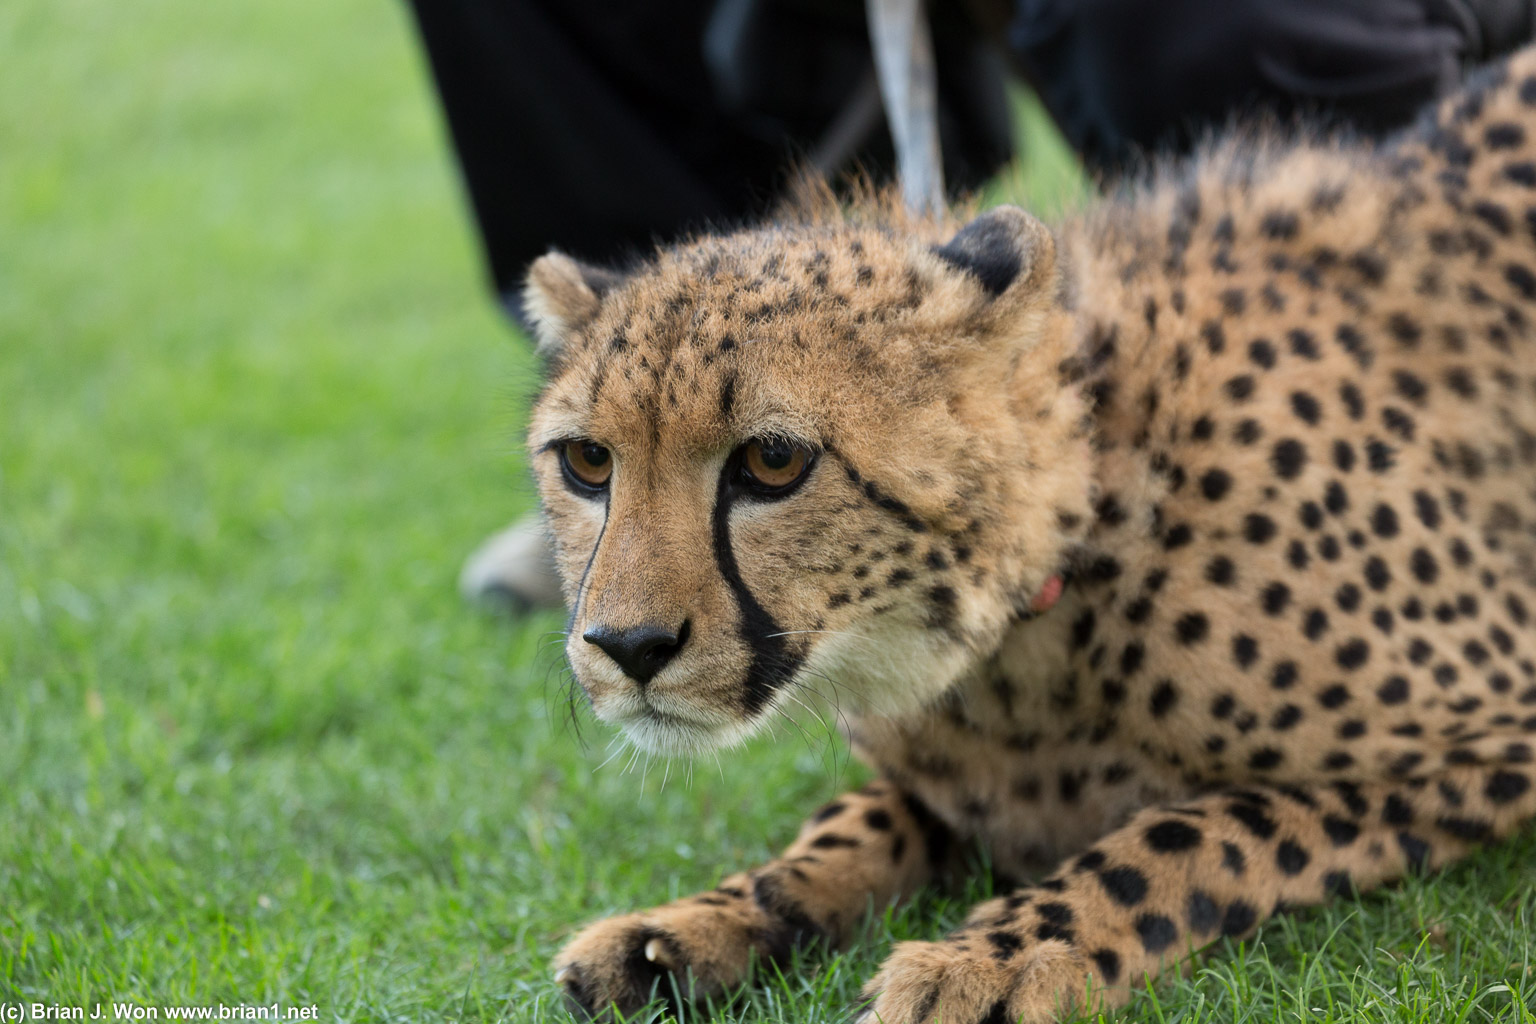 Baby cheetah!